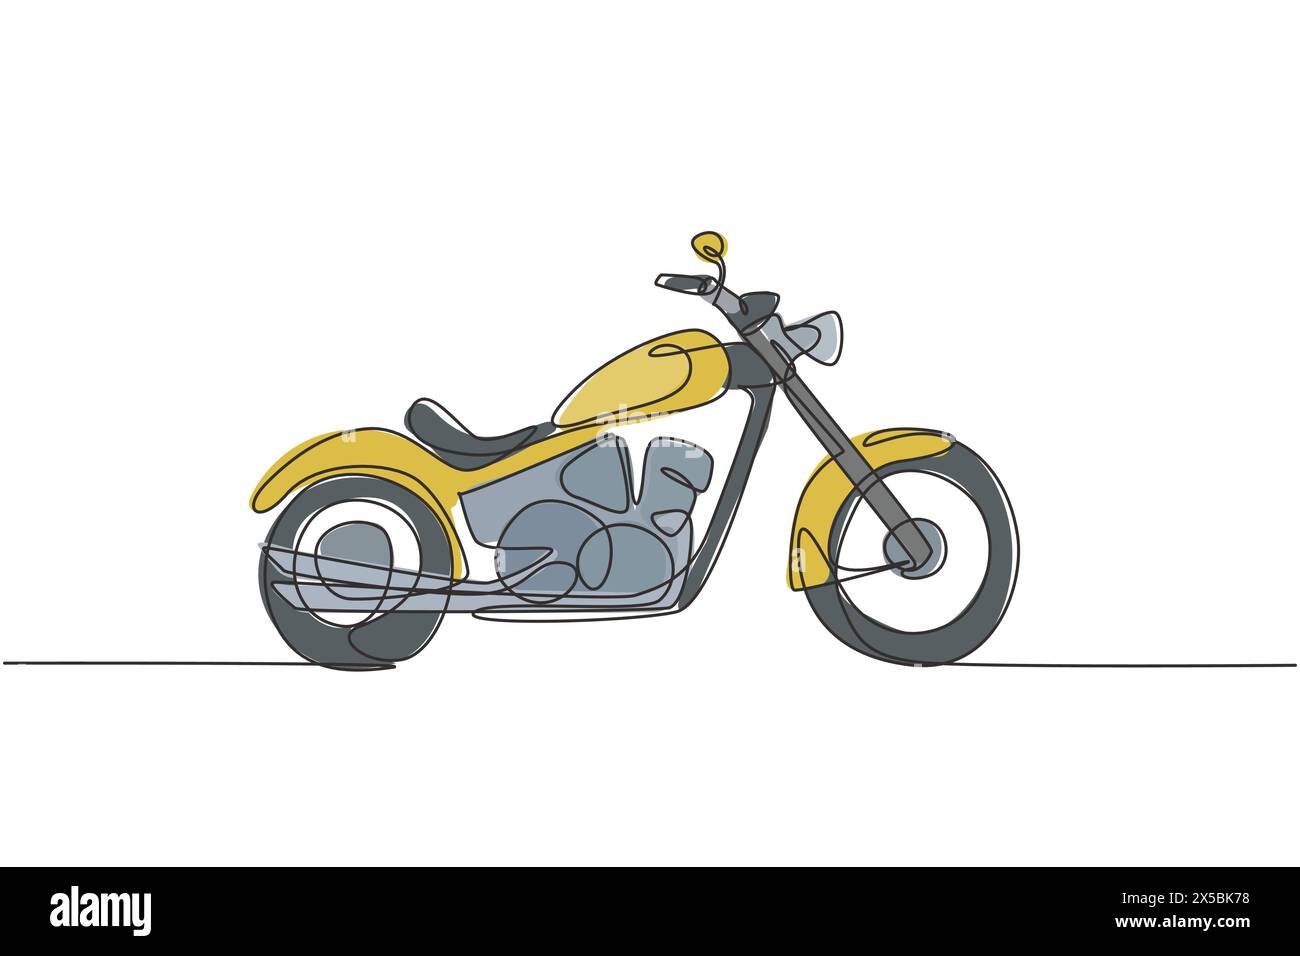 Eine einzeilige Zeichnung eines alten Vintage-Motorrads im Retro-Stil. Vintage Motorrad Transport Konzept kontinuierliche Linie zeichnen Design Vektor Illustration Grap Stock Vektor